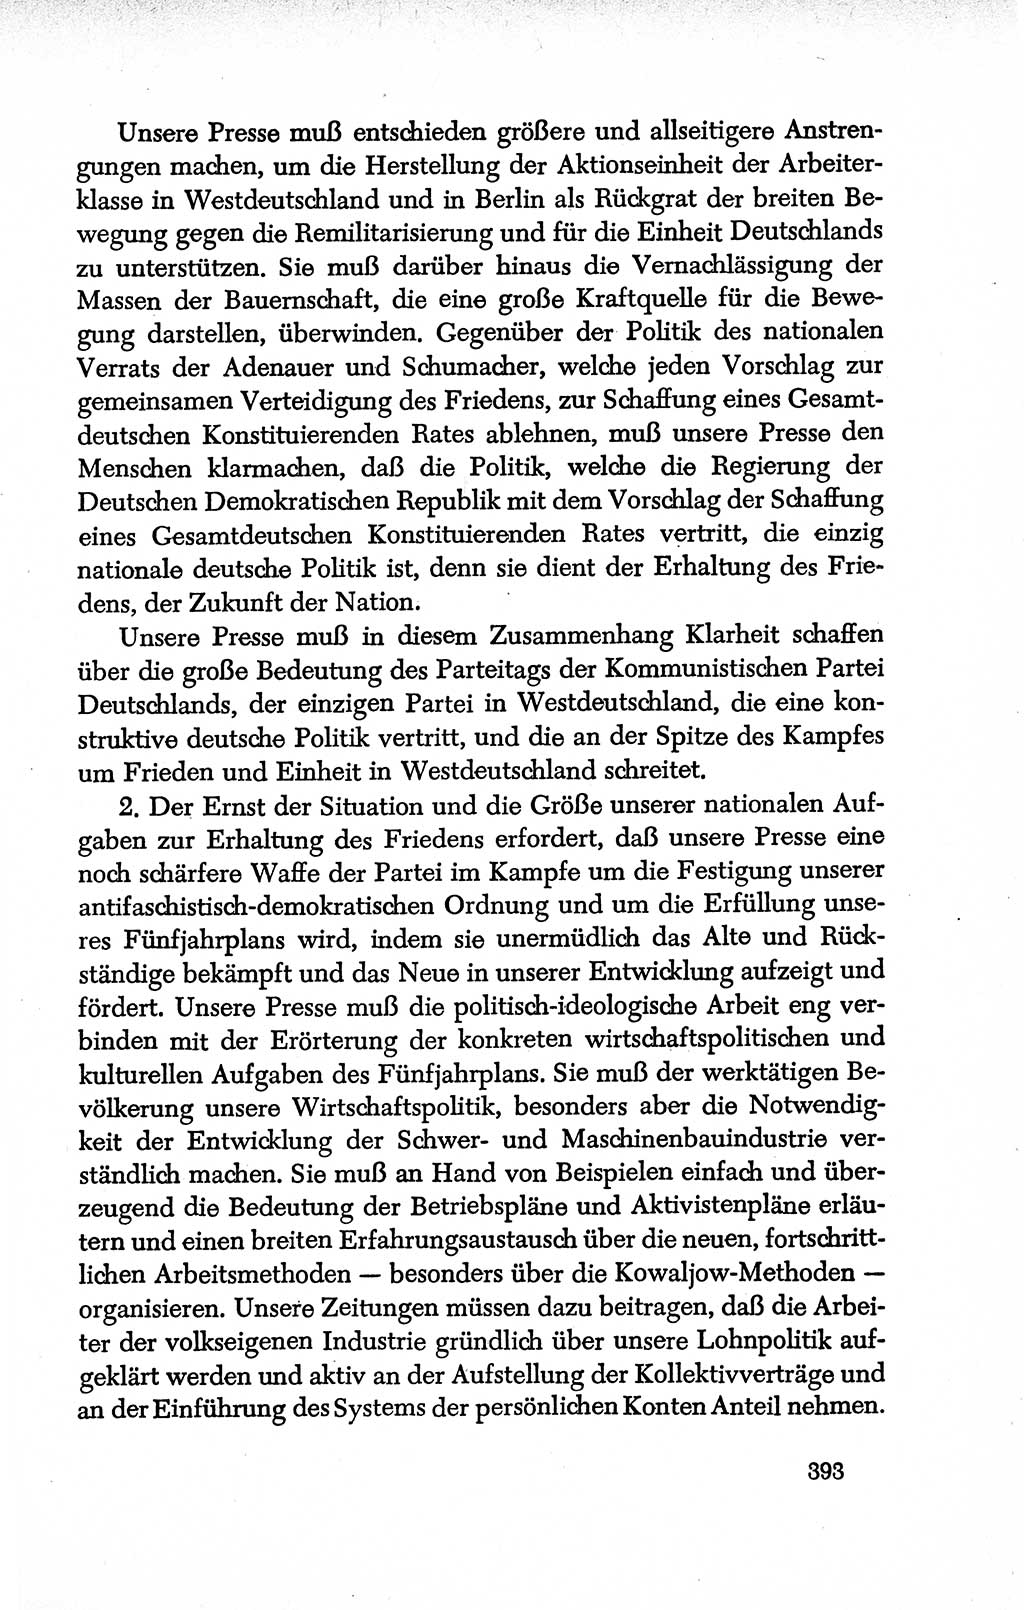 Dokumente der Sozialistischen Einheitspartei Deutschlands (SED) [Deutsche Demokratische Republik (DDR)] 1950-1952, Seite 393 (Dok. SED DDR 1950-1952, S. 393)